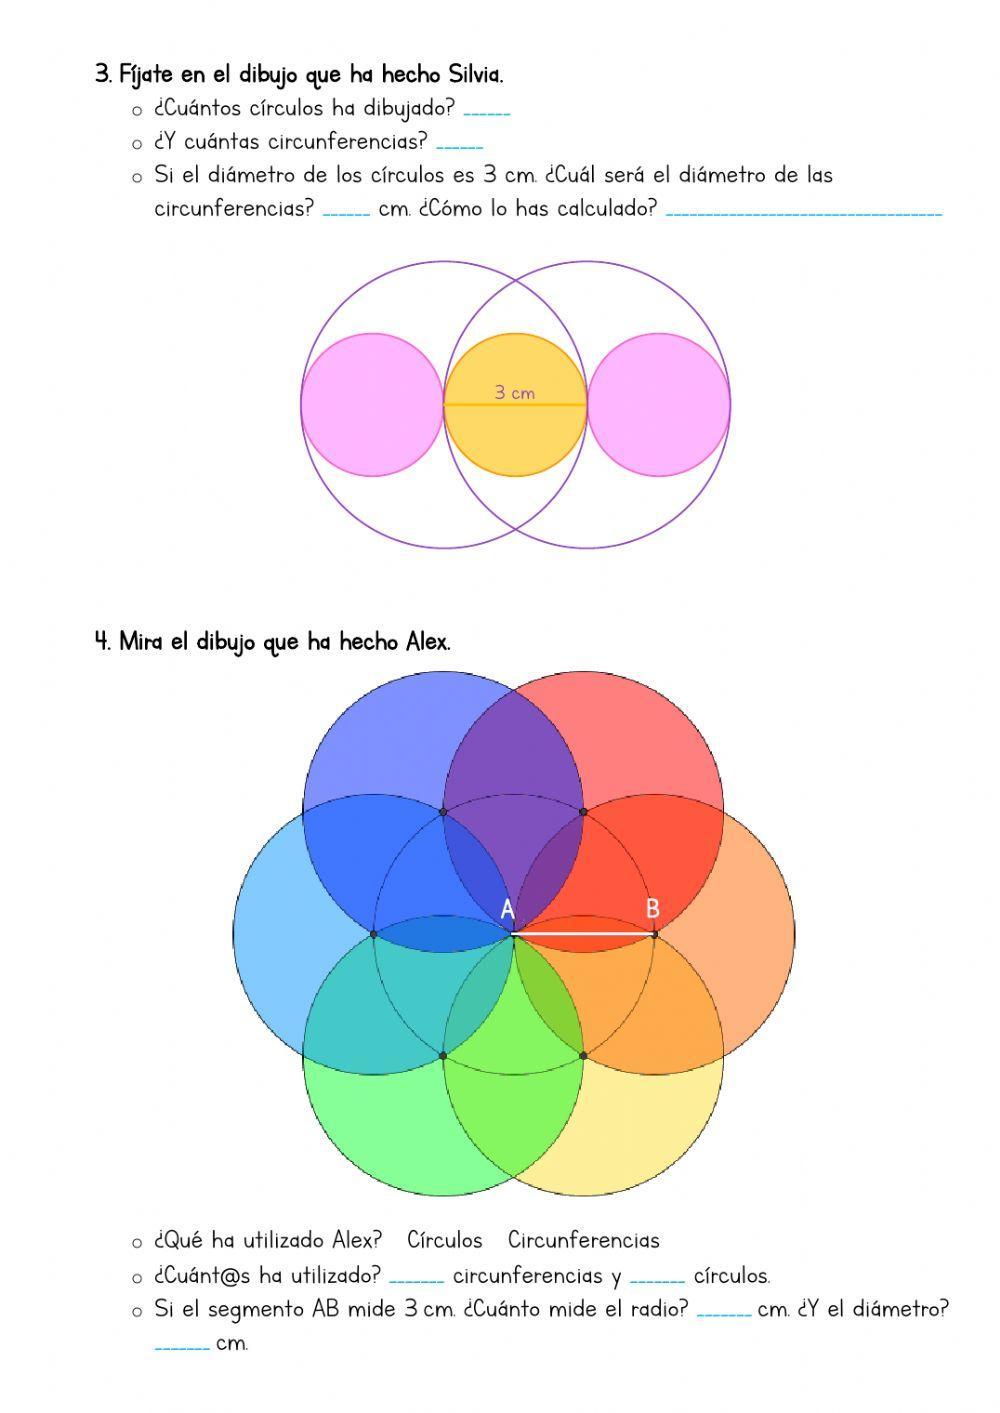 Cincunferencia y círculo